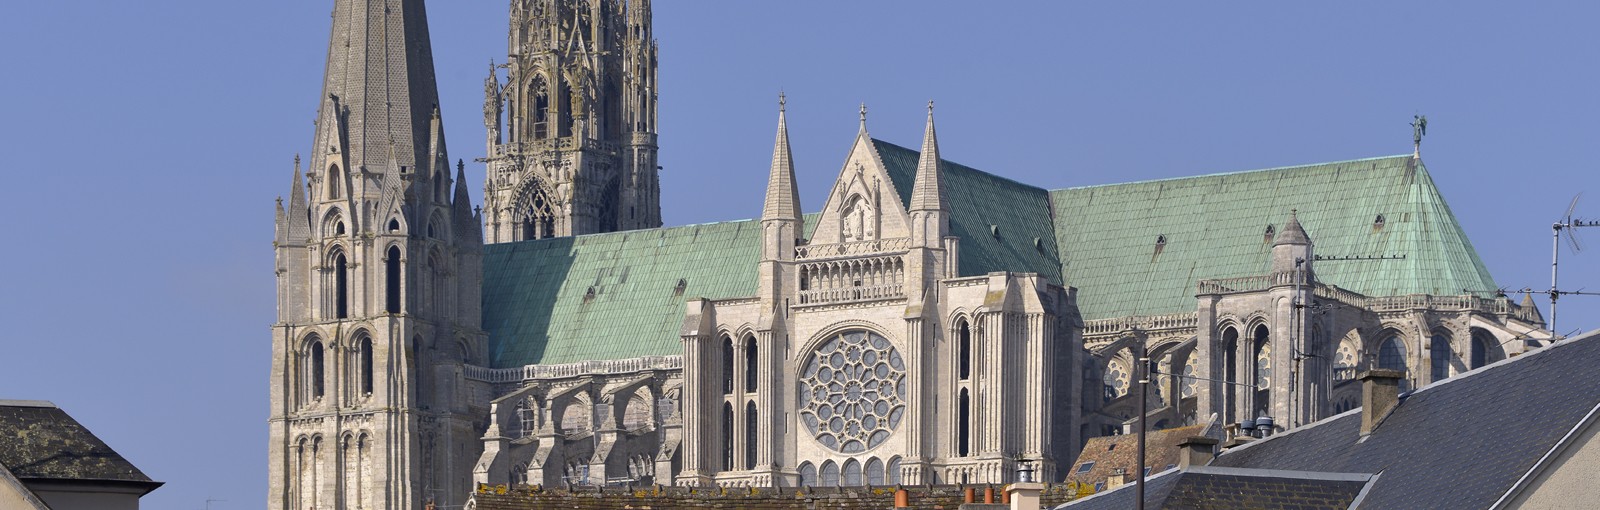 Tours Chartres - Medio-días - Excursiones desde París